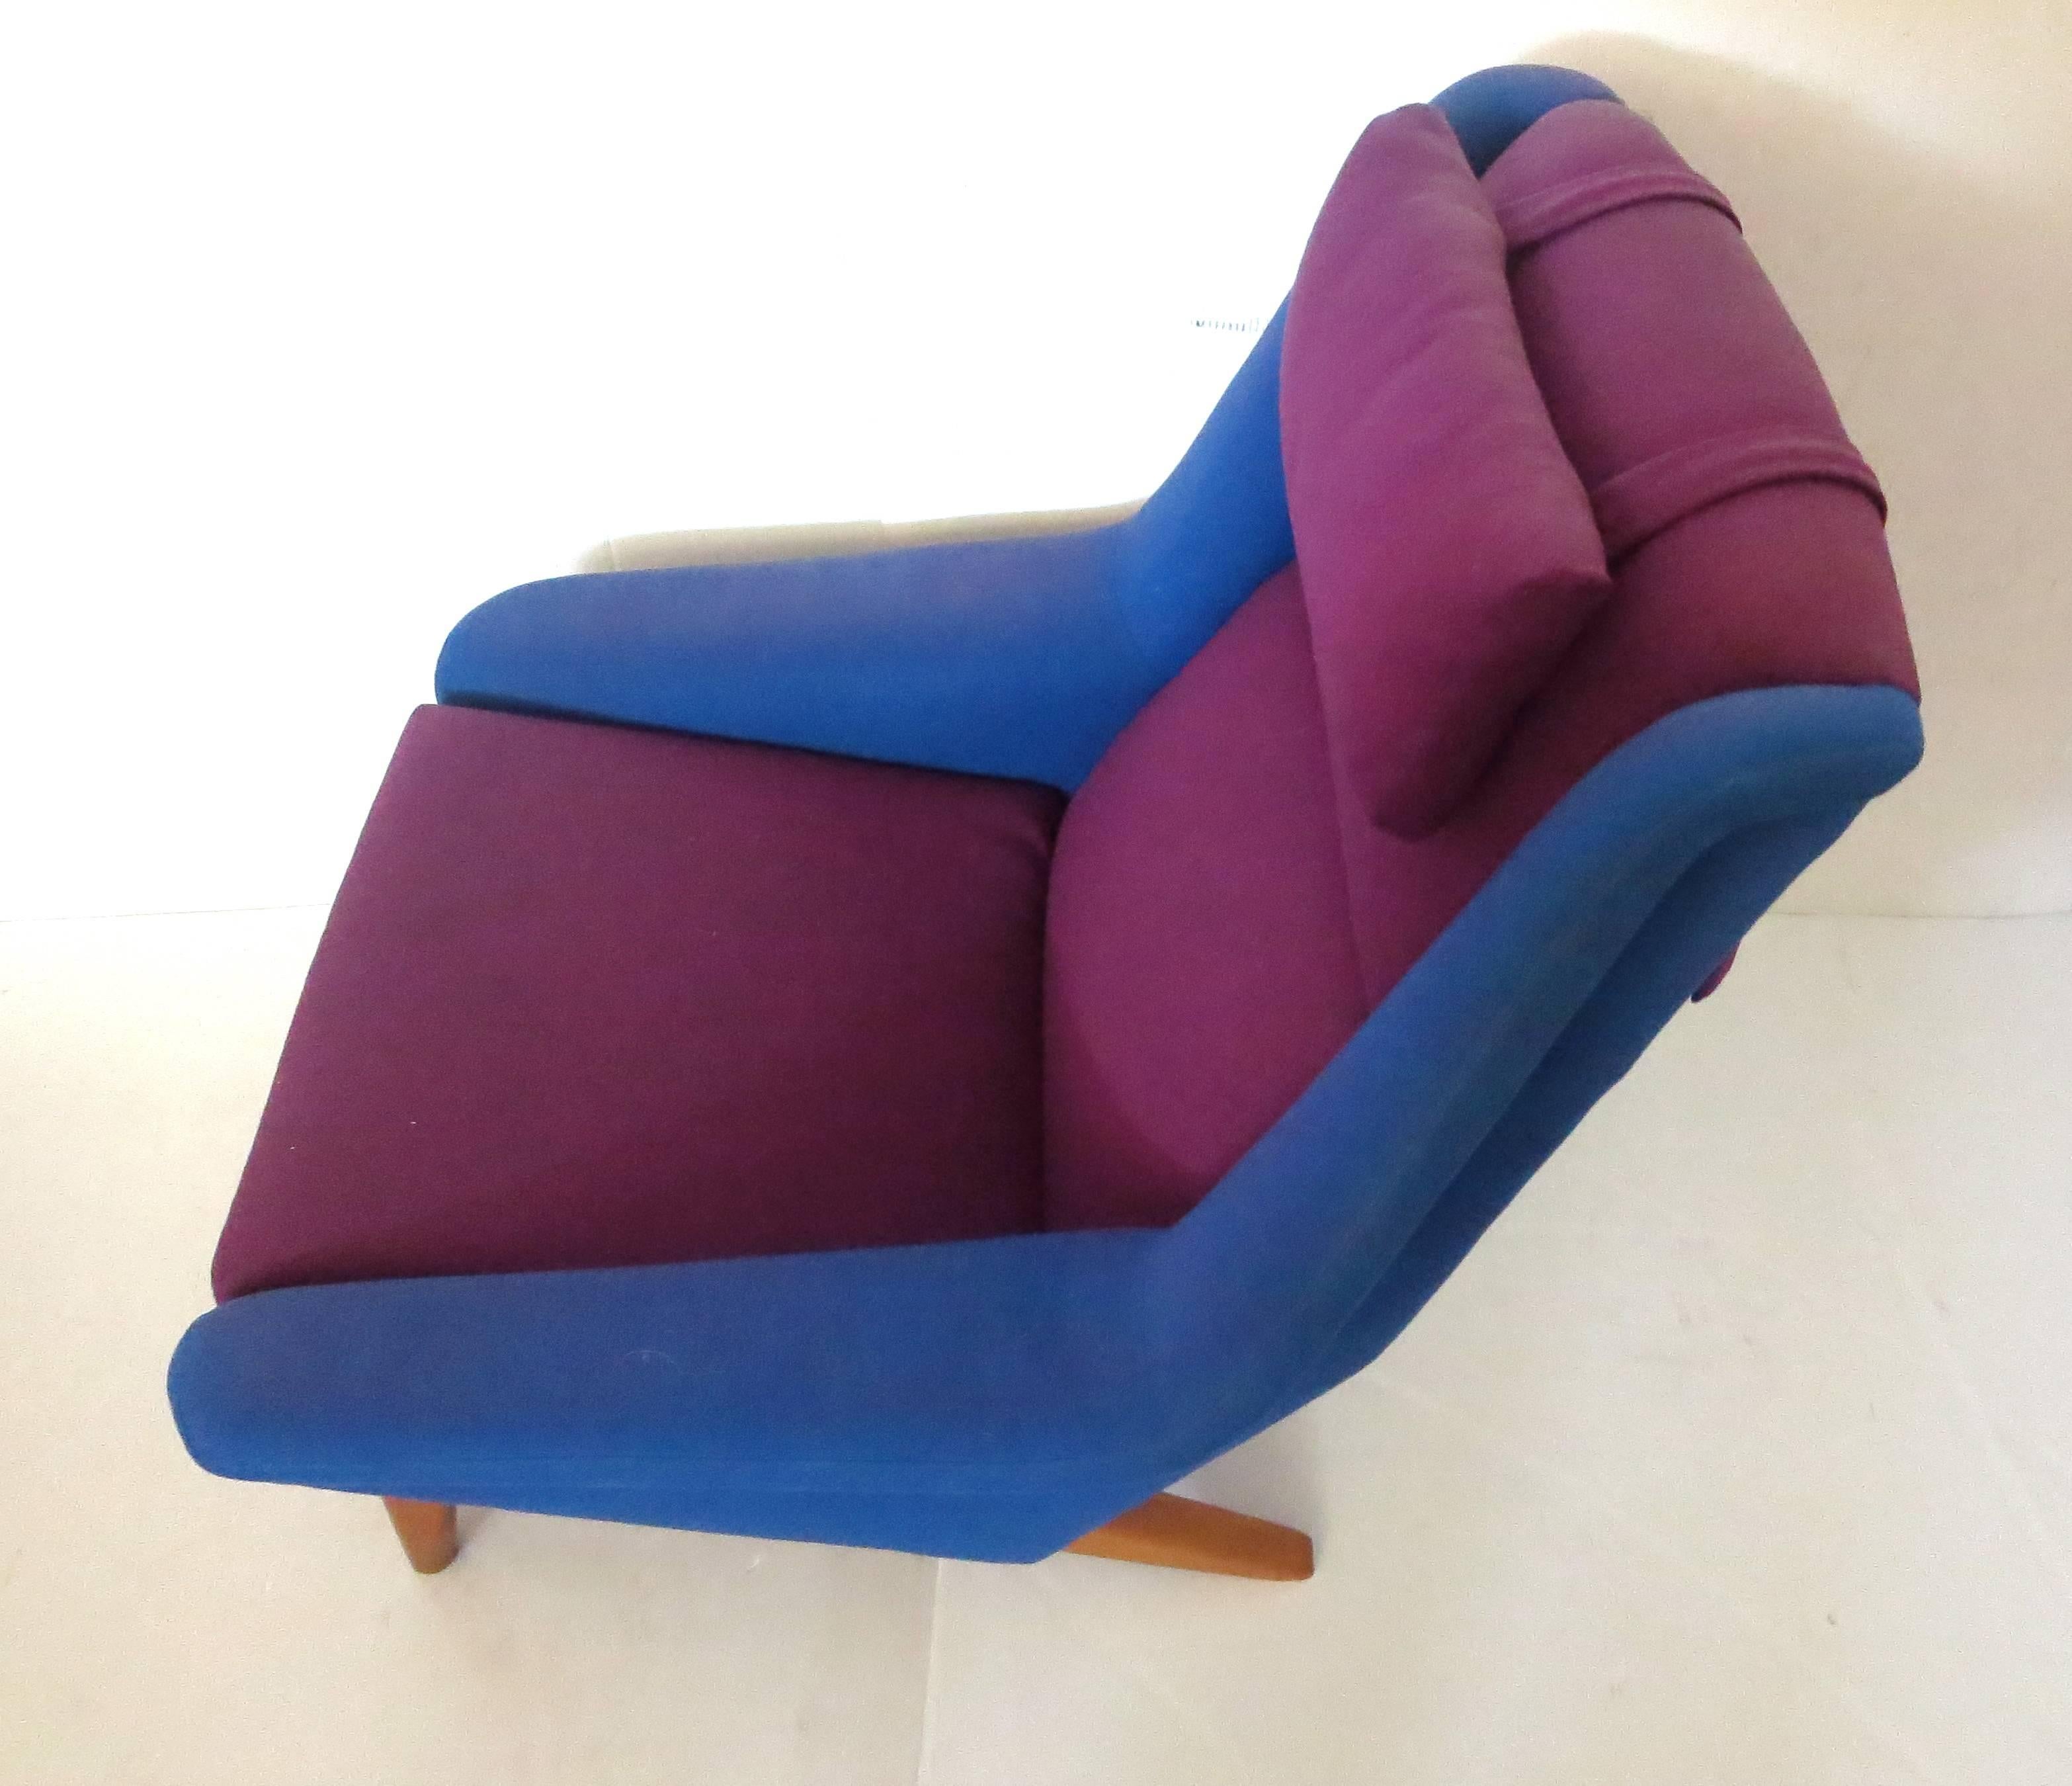 Danish Rare Original Upholstery Lounge Chair by Folke Ohlsson for Fritz Hansen